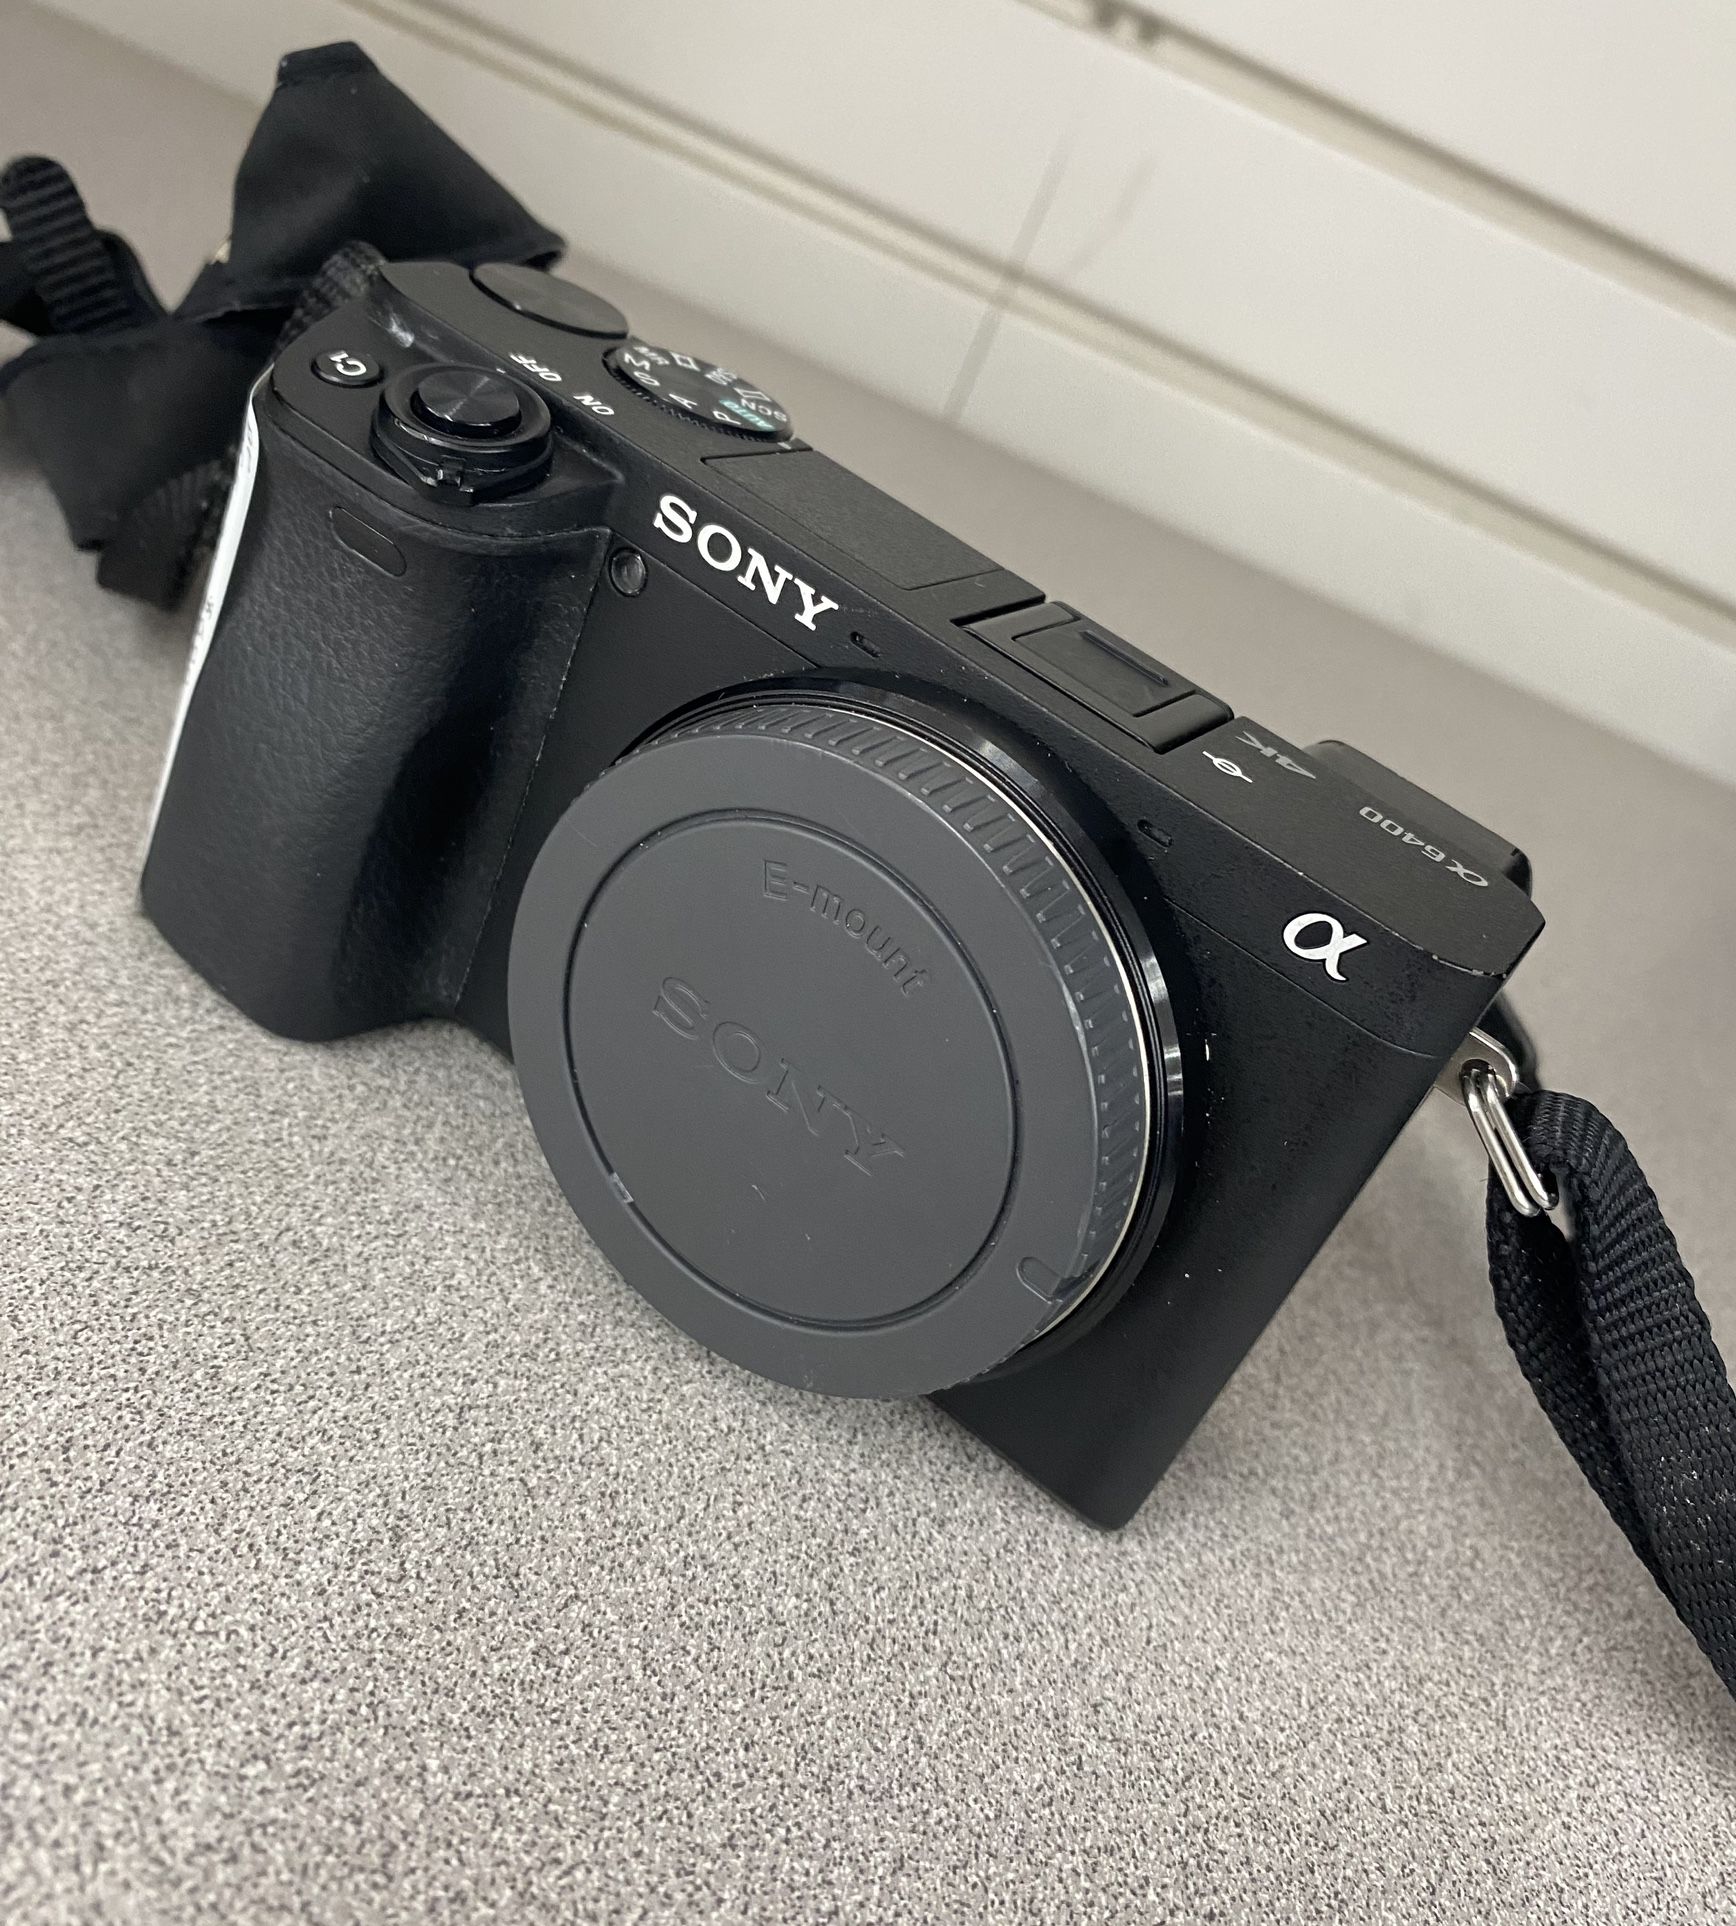 Sony 6400 Camera